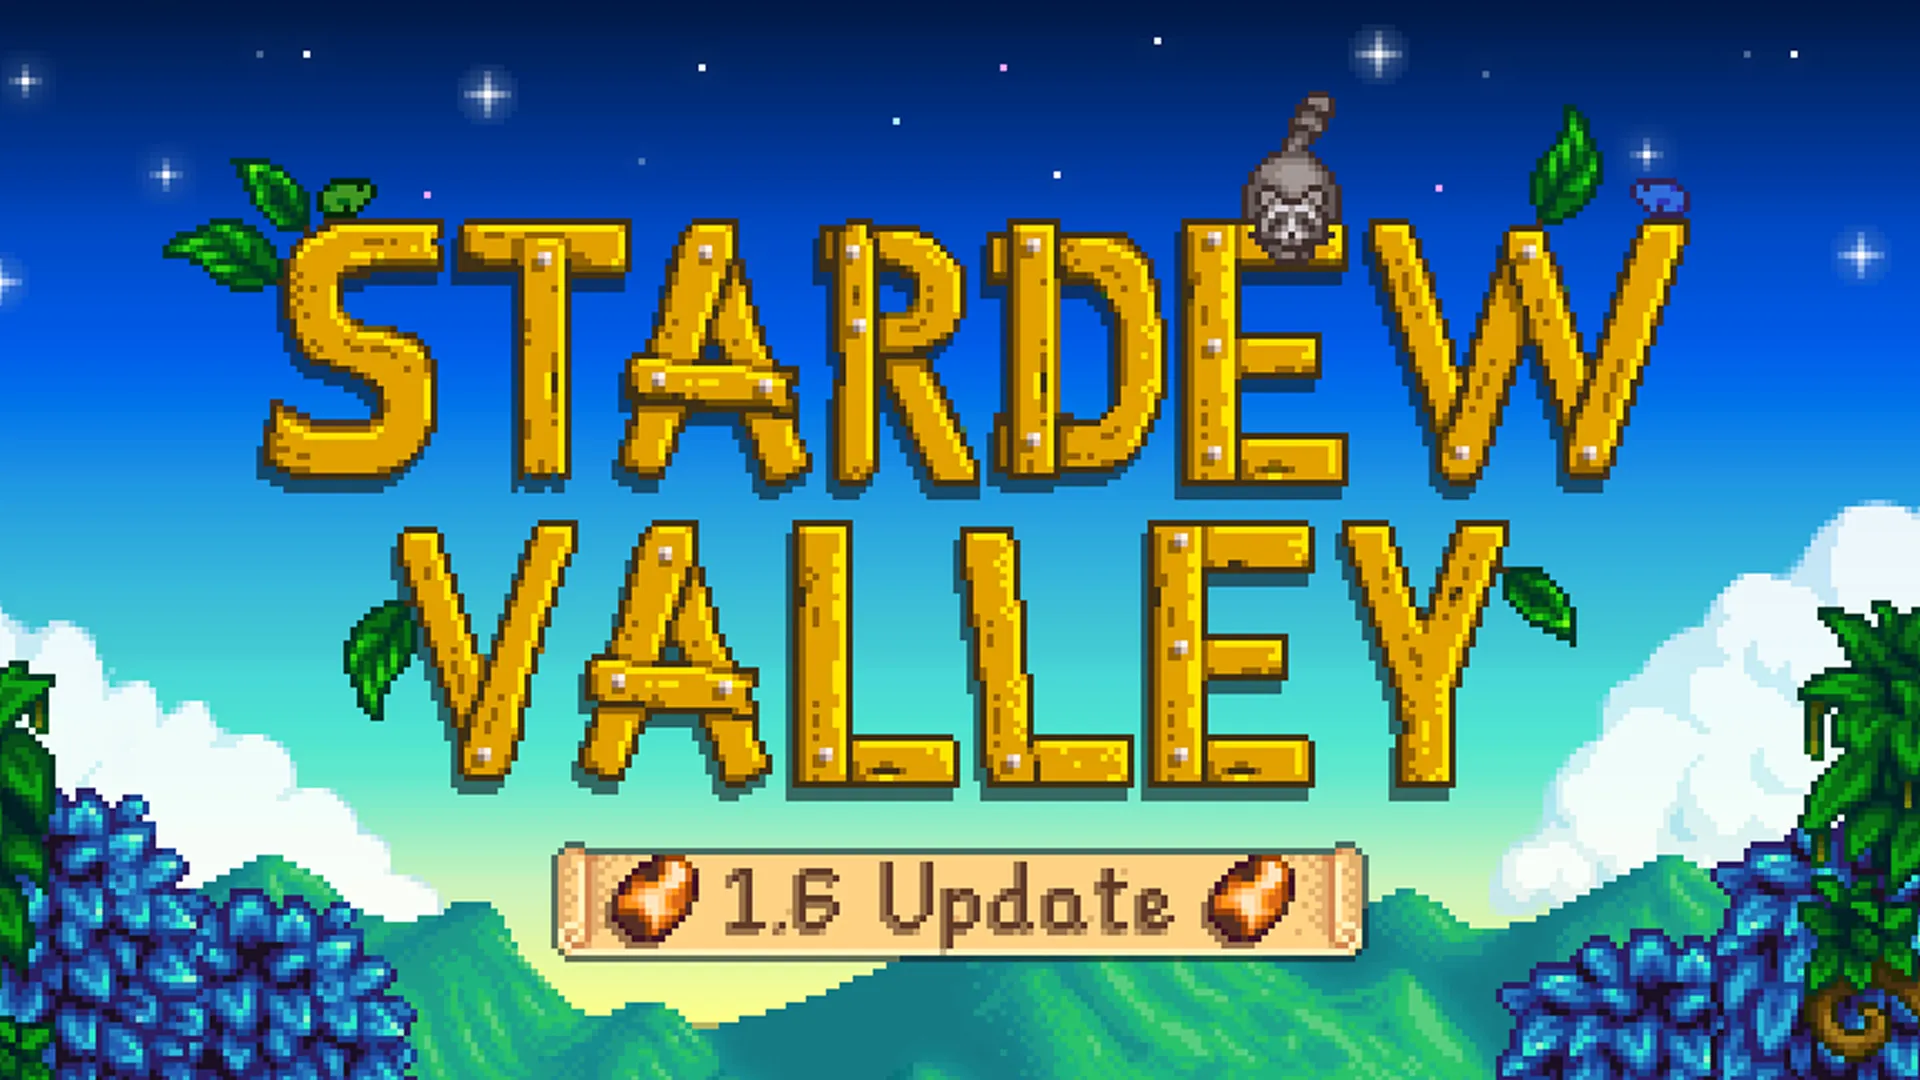 Stardew Valley 1.6 Update